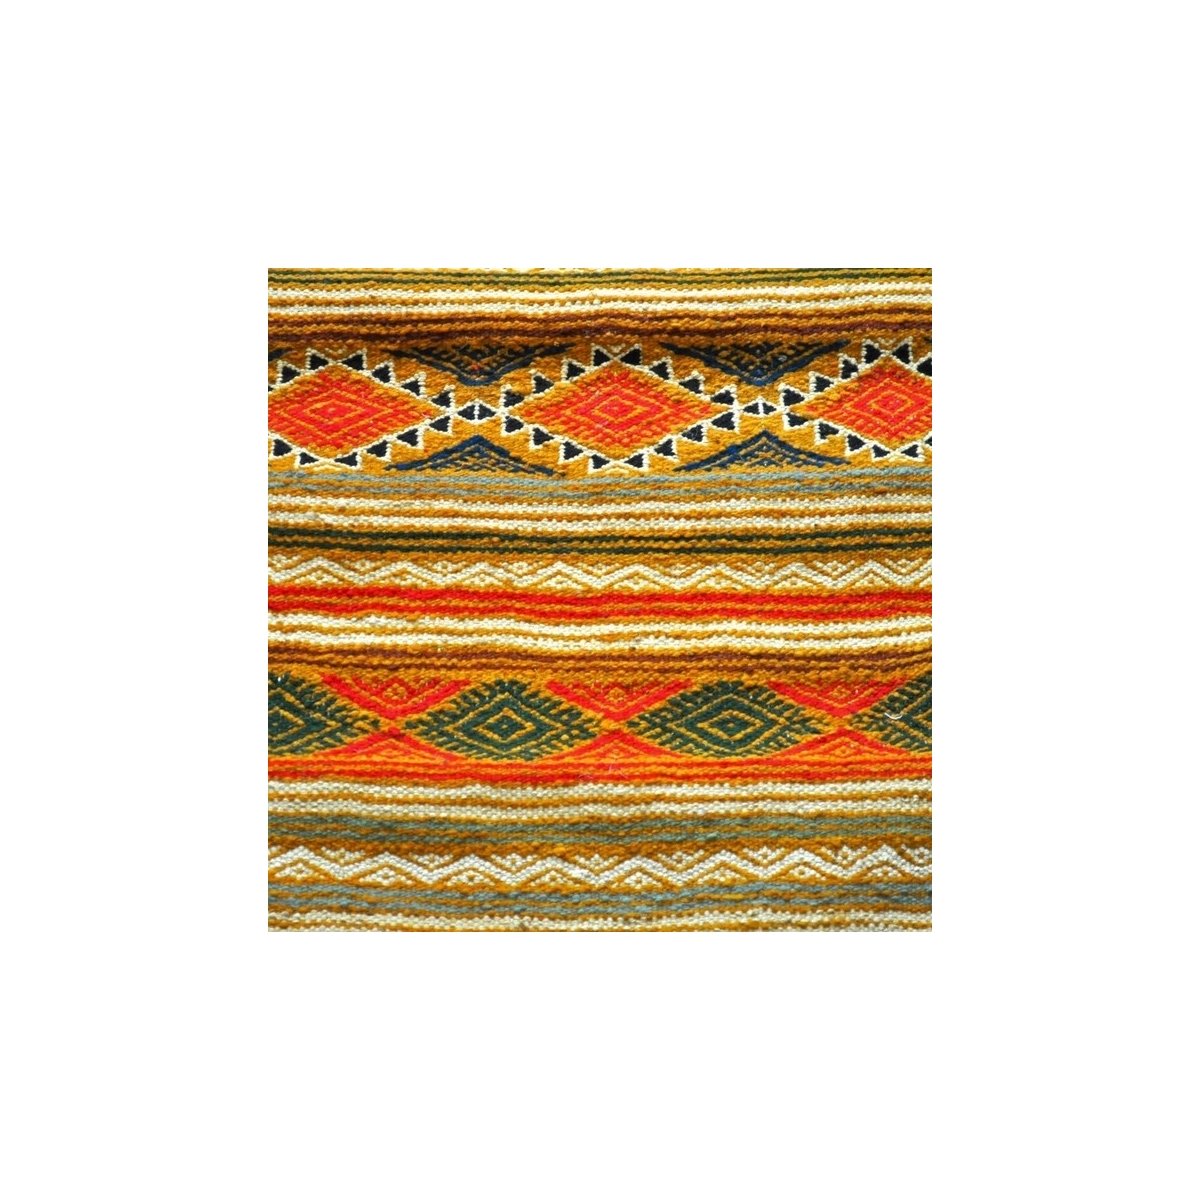 Tapete berbere Tapete Kilim longo Rabat 60x210 Amarelo (Tecidos à mão, Lã, Tunísia) Tapete tunisiano kilim, estilo marroquino. T